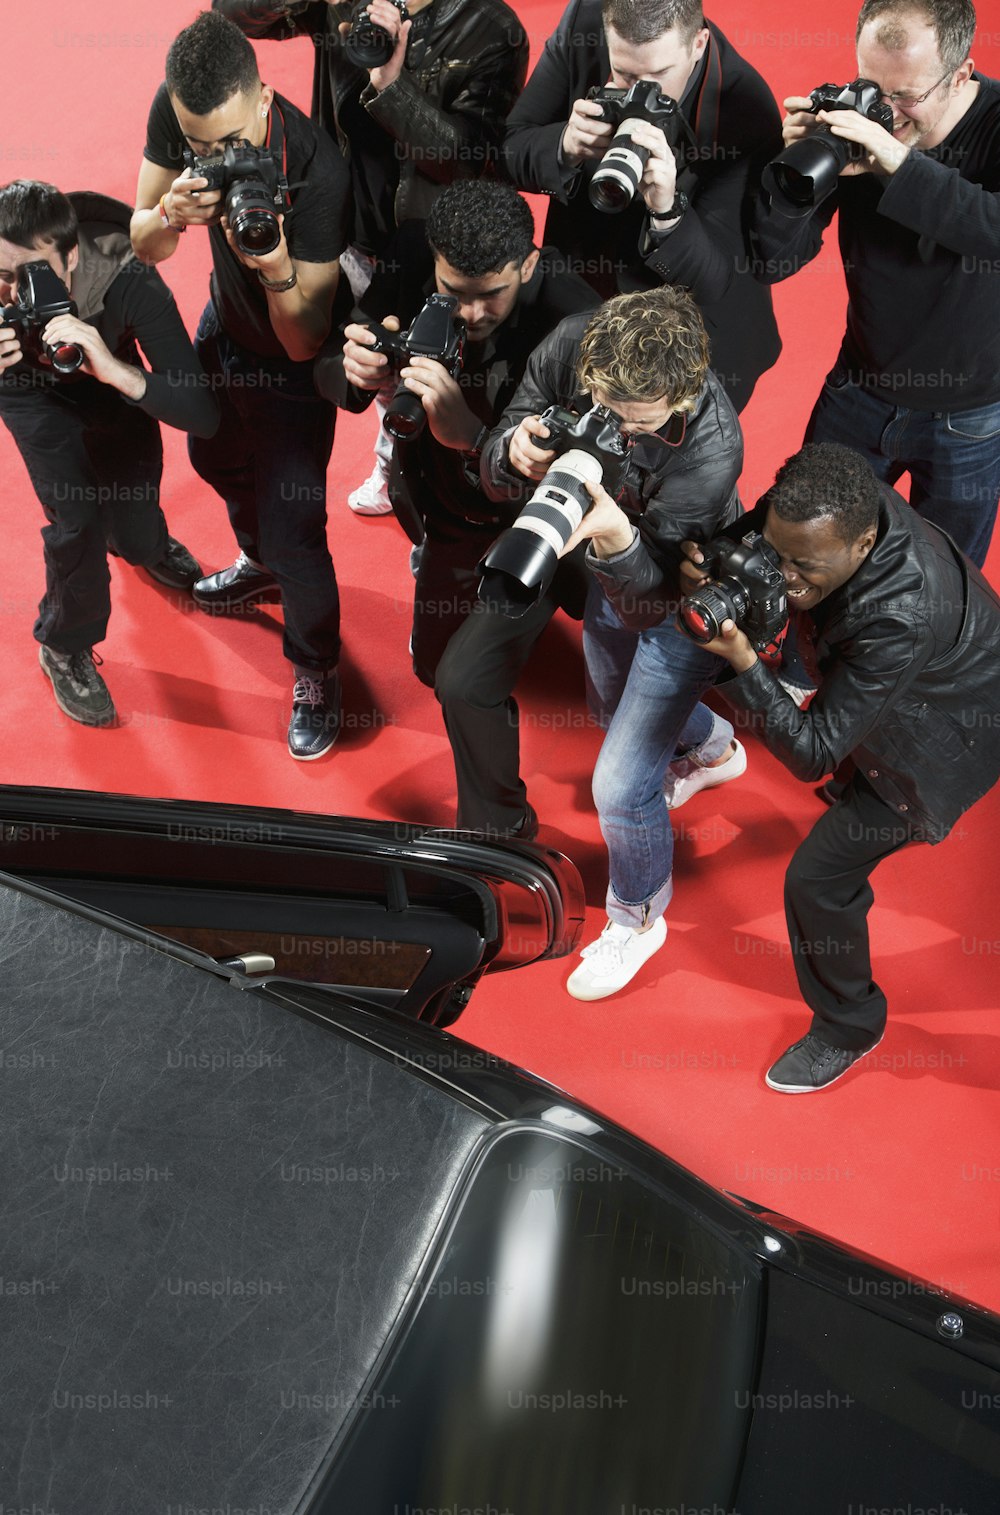 Eine Gruppe von Fotografen fotografiert einen Mann auf einem roten Teppich